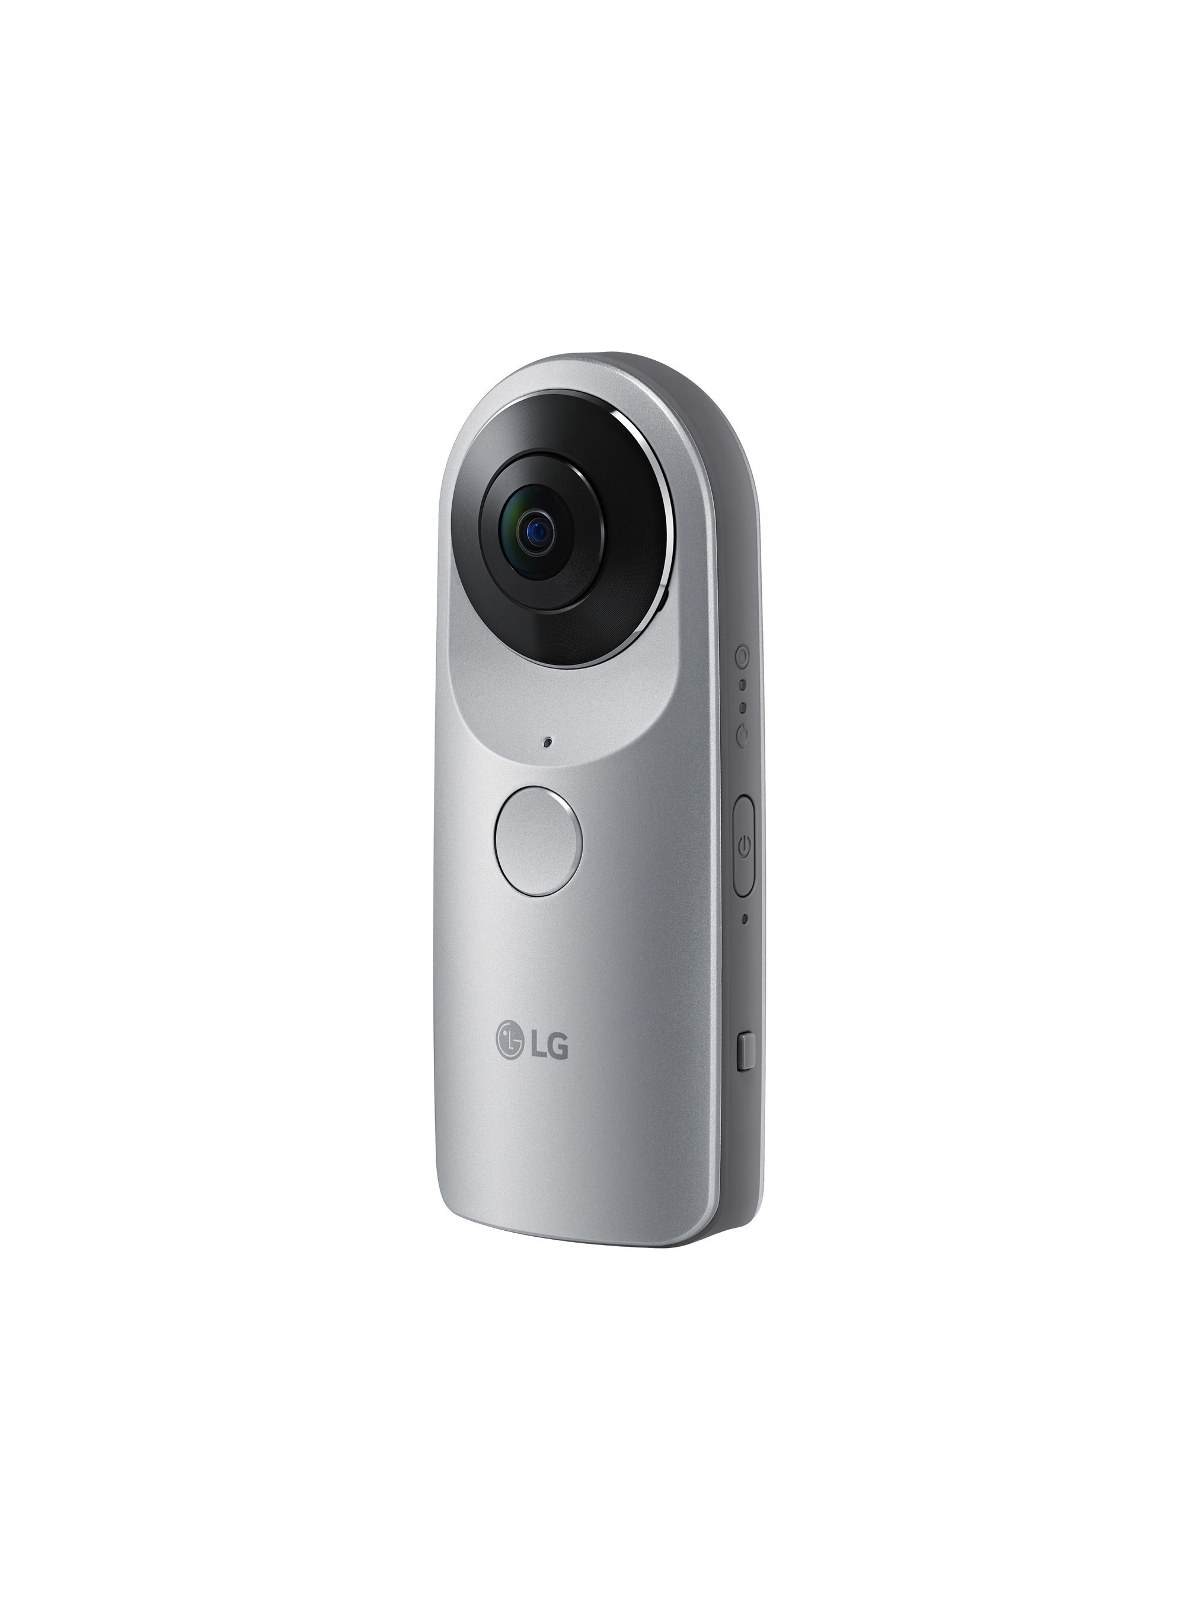 LG-G5-and-360 camera